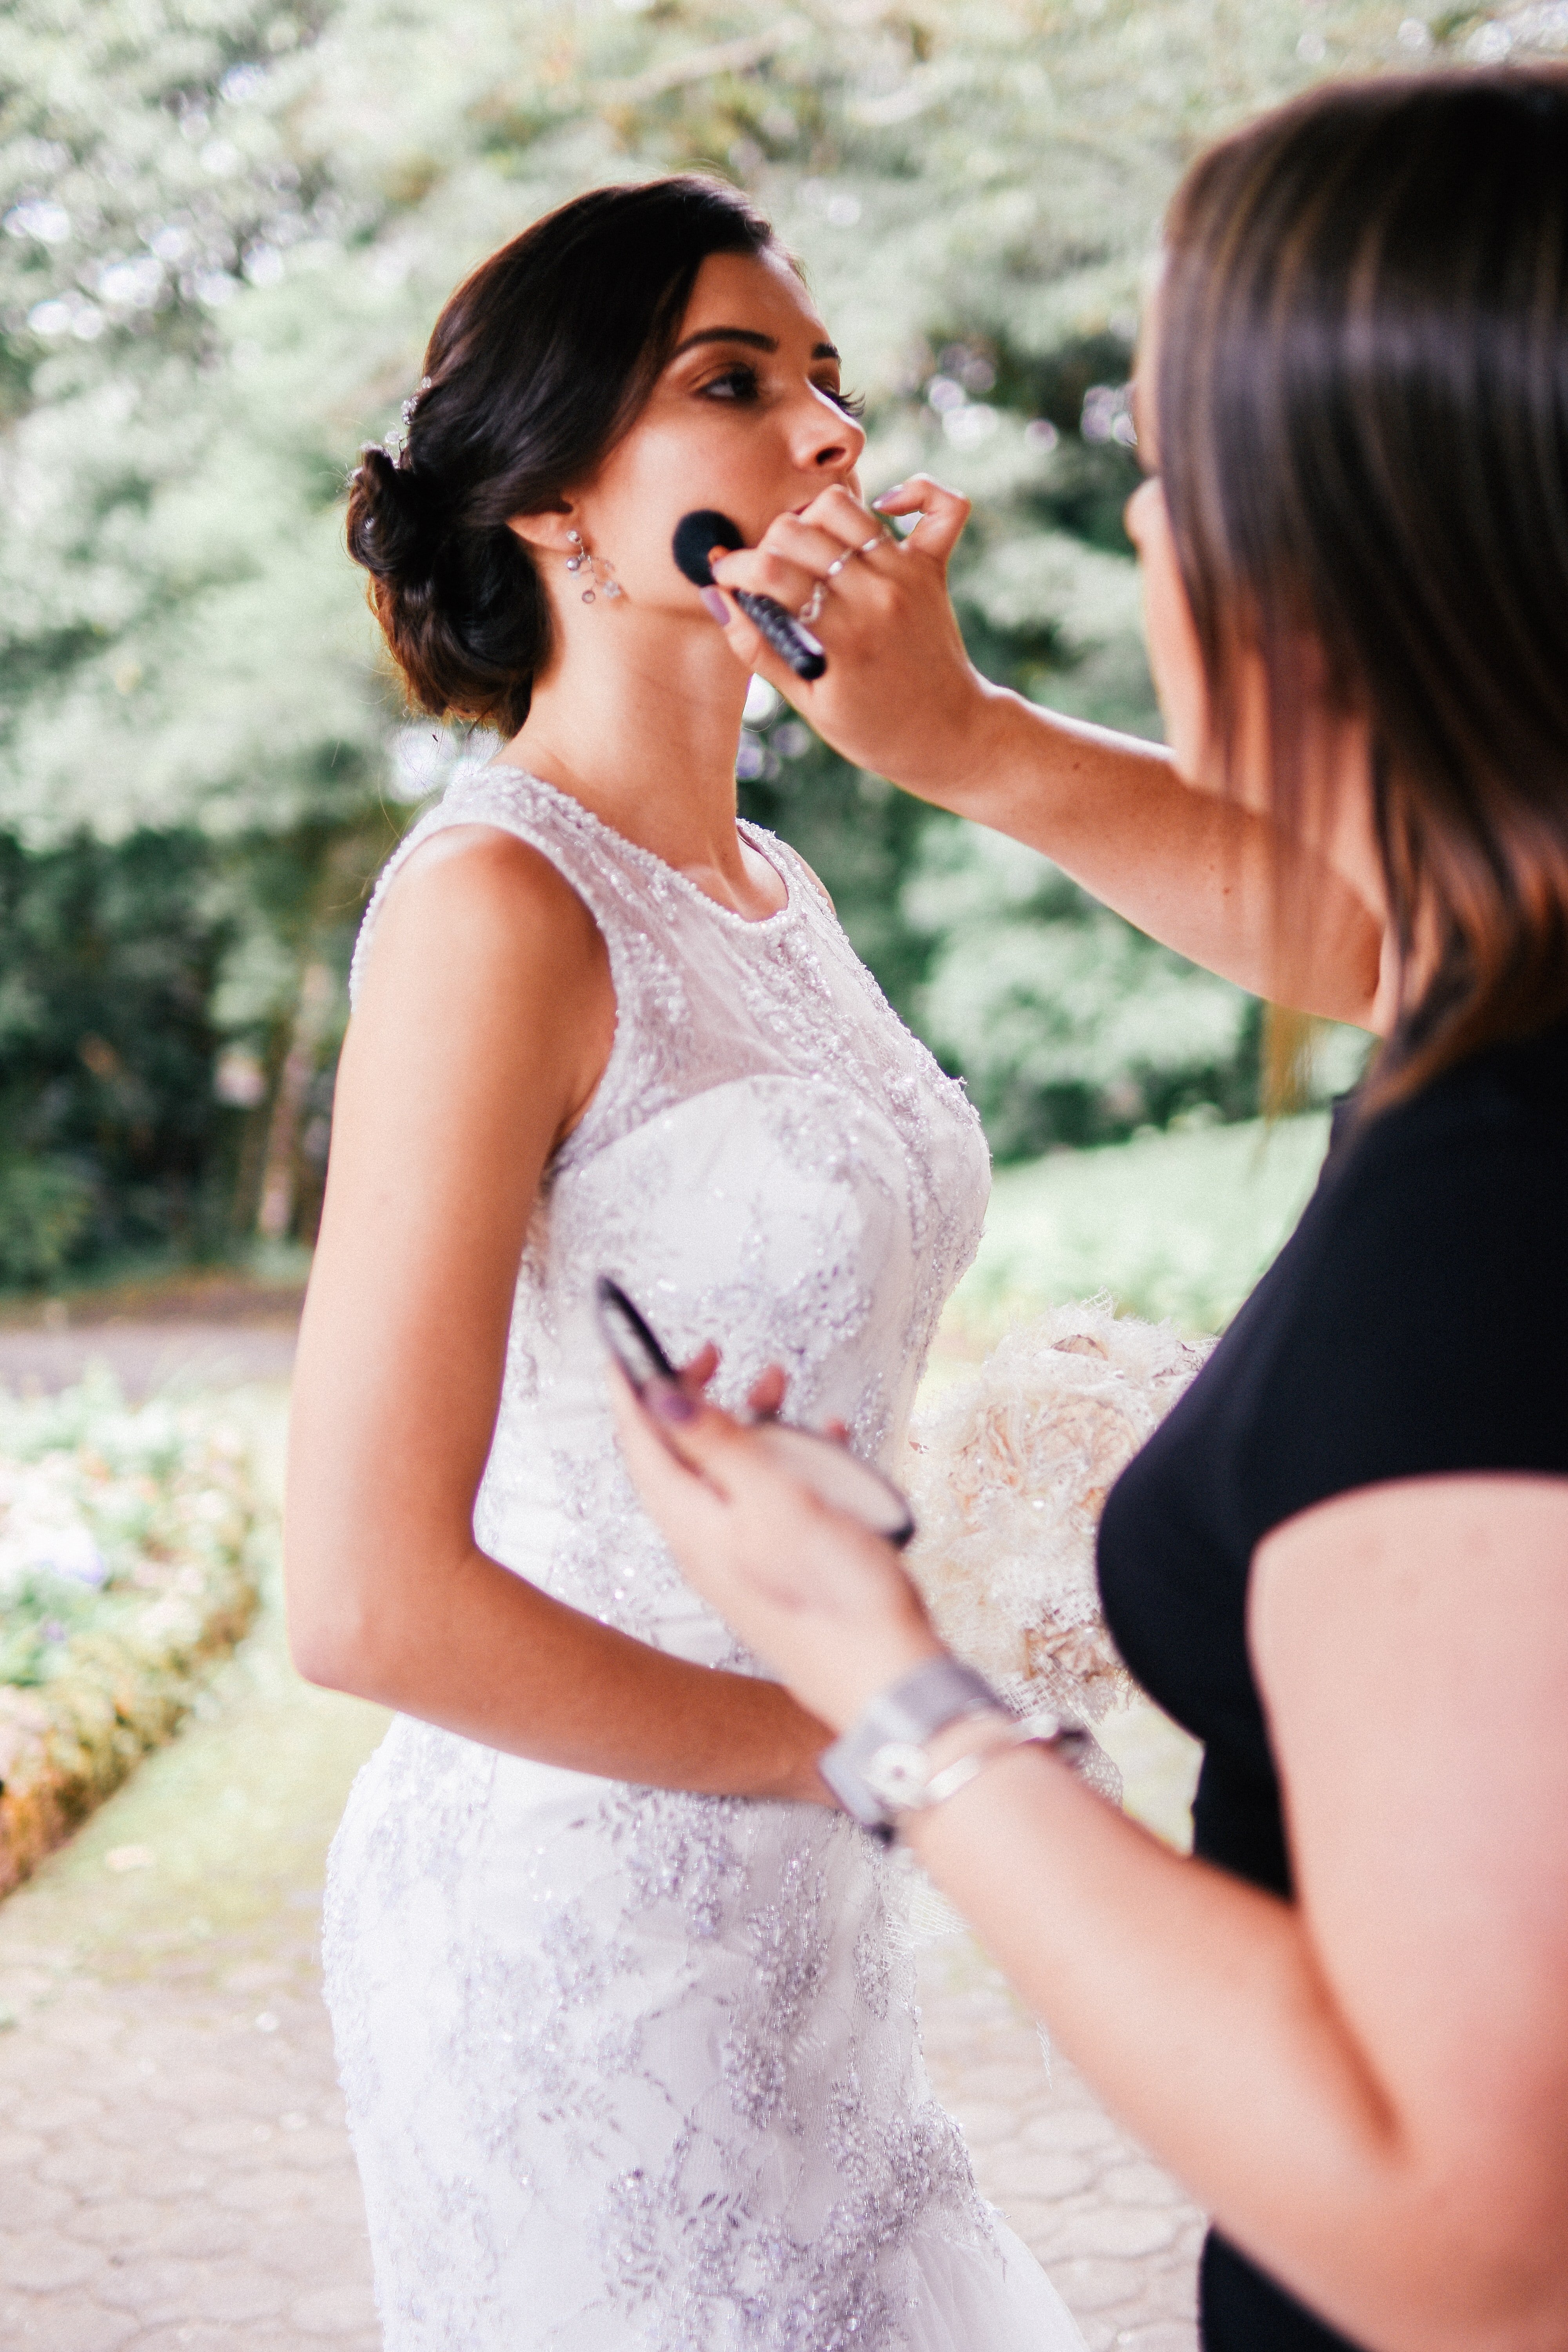 Préparation le jour du mariage avec un maquillage champêtre